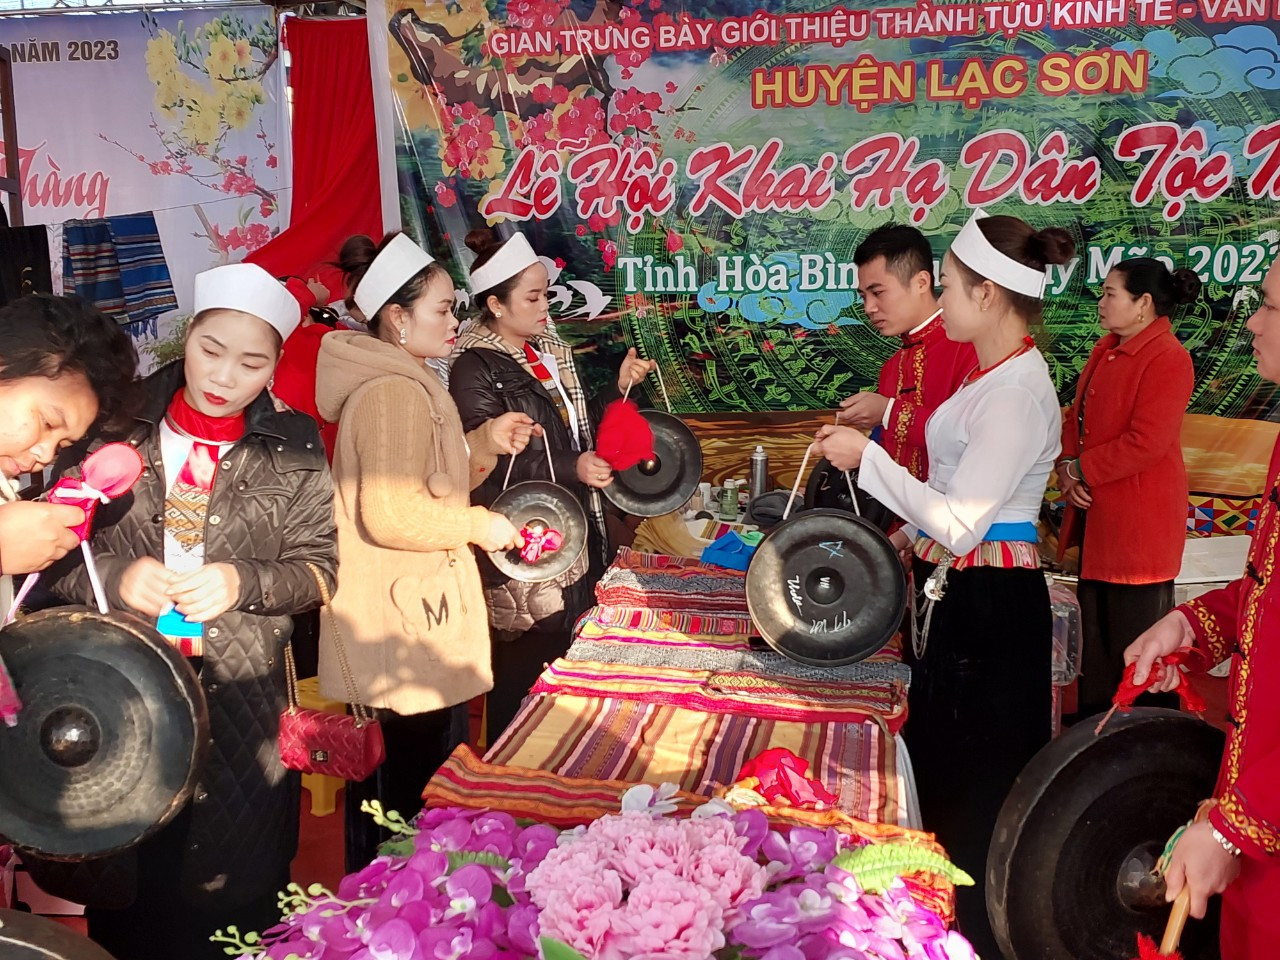 Lễ hội Khai hạ, đặc sắc riêng của dân tộc Mường ở Hòa Bình